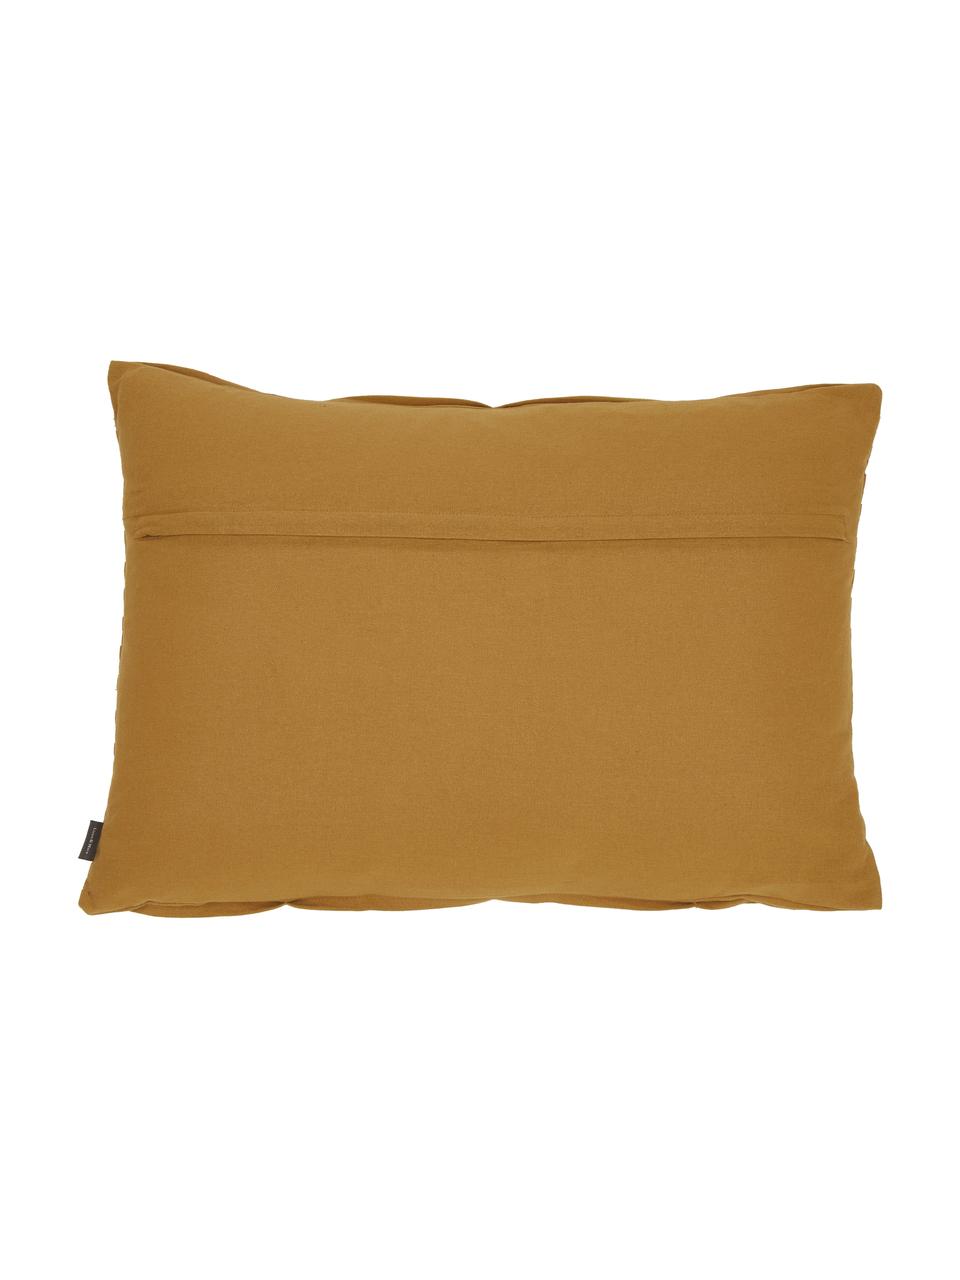 Poduszka z bawełny z wypełnieniem Pleated, 100% bawełna, Musztardowy, S 40 x D 60 cm